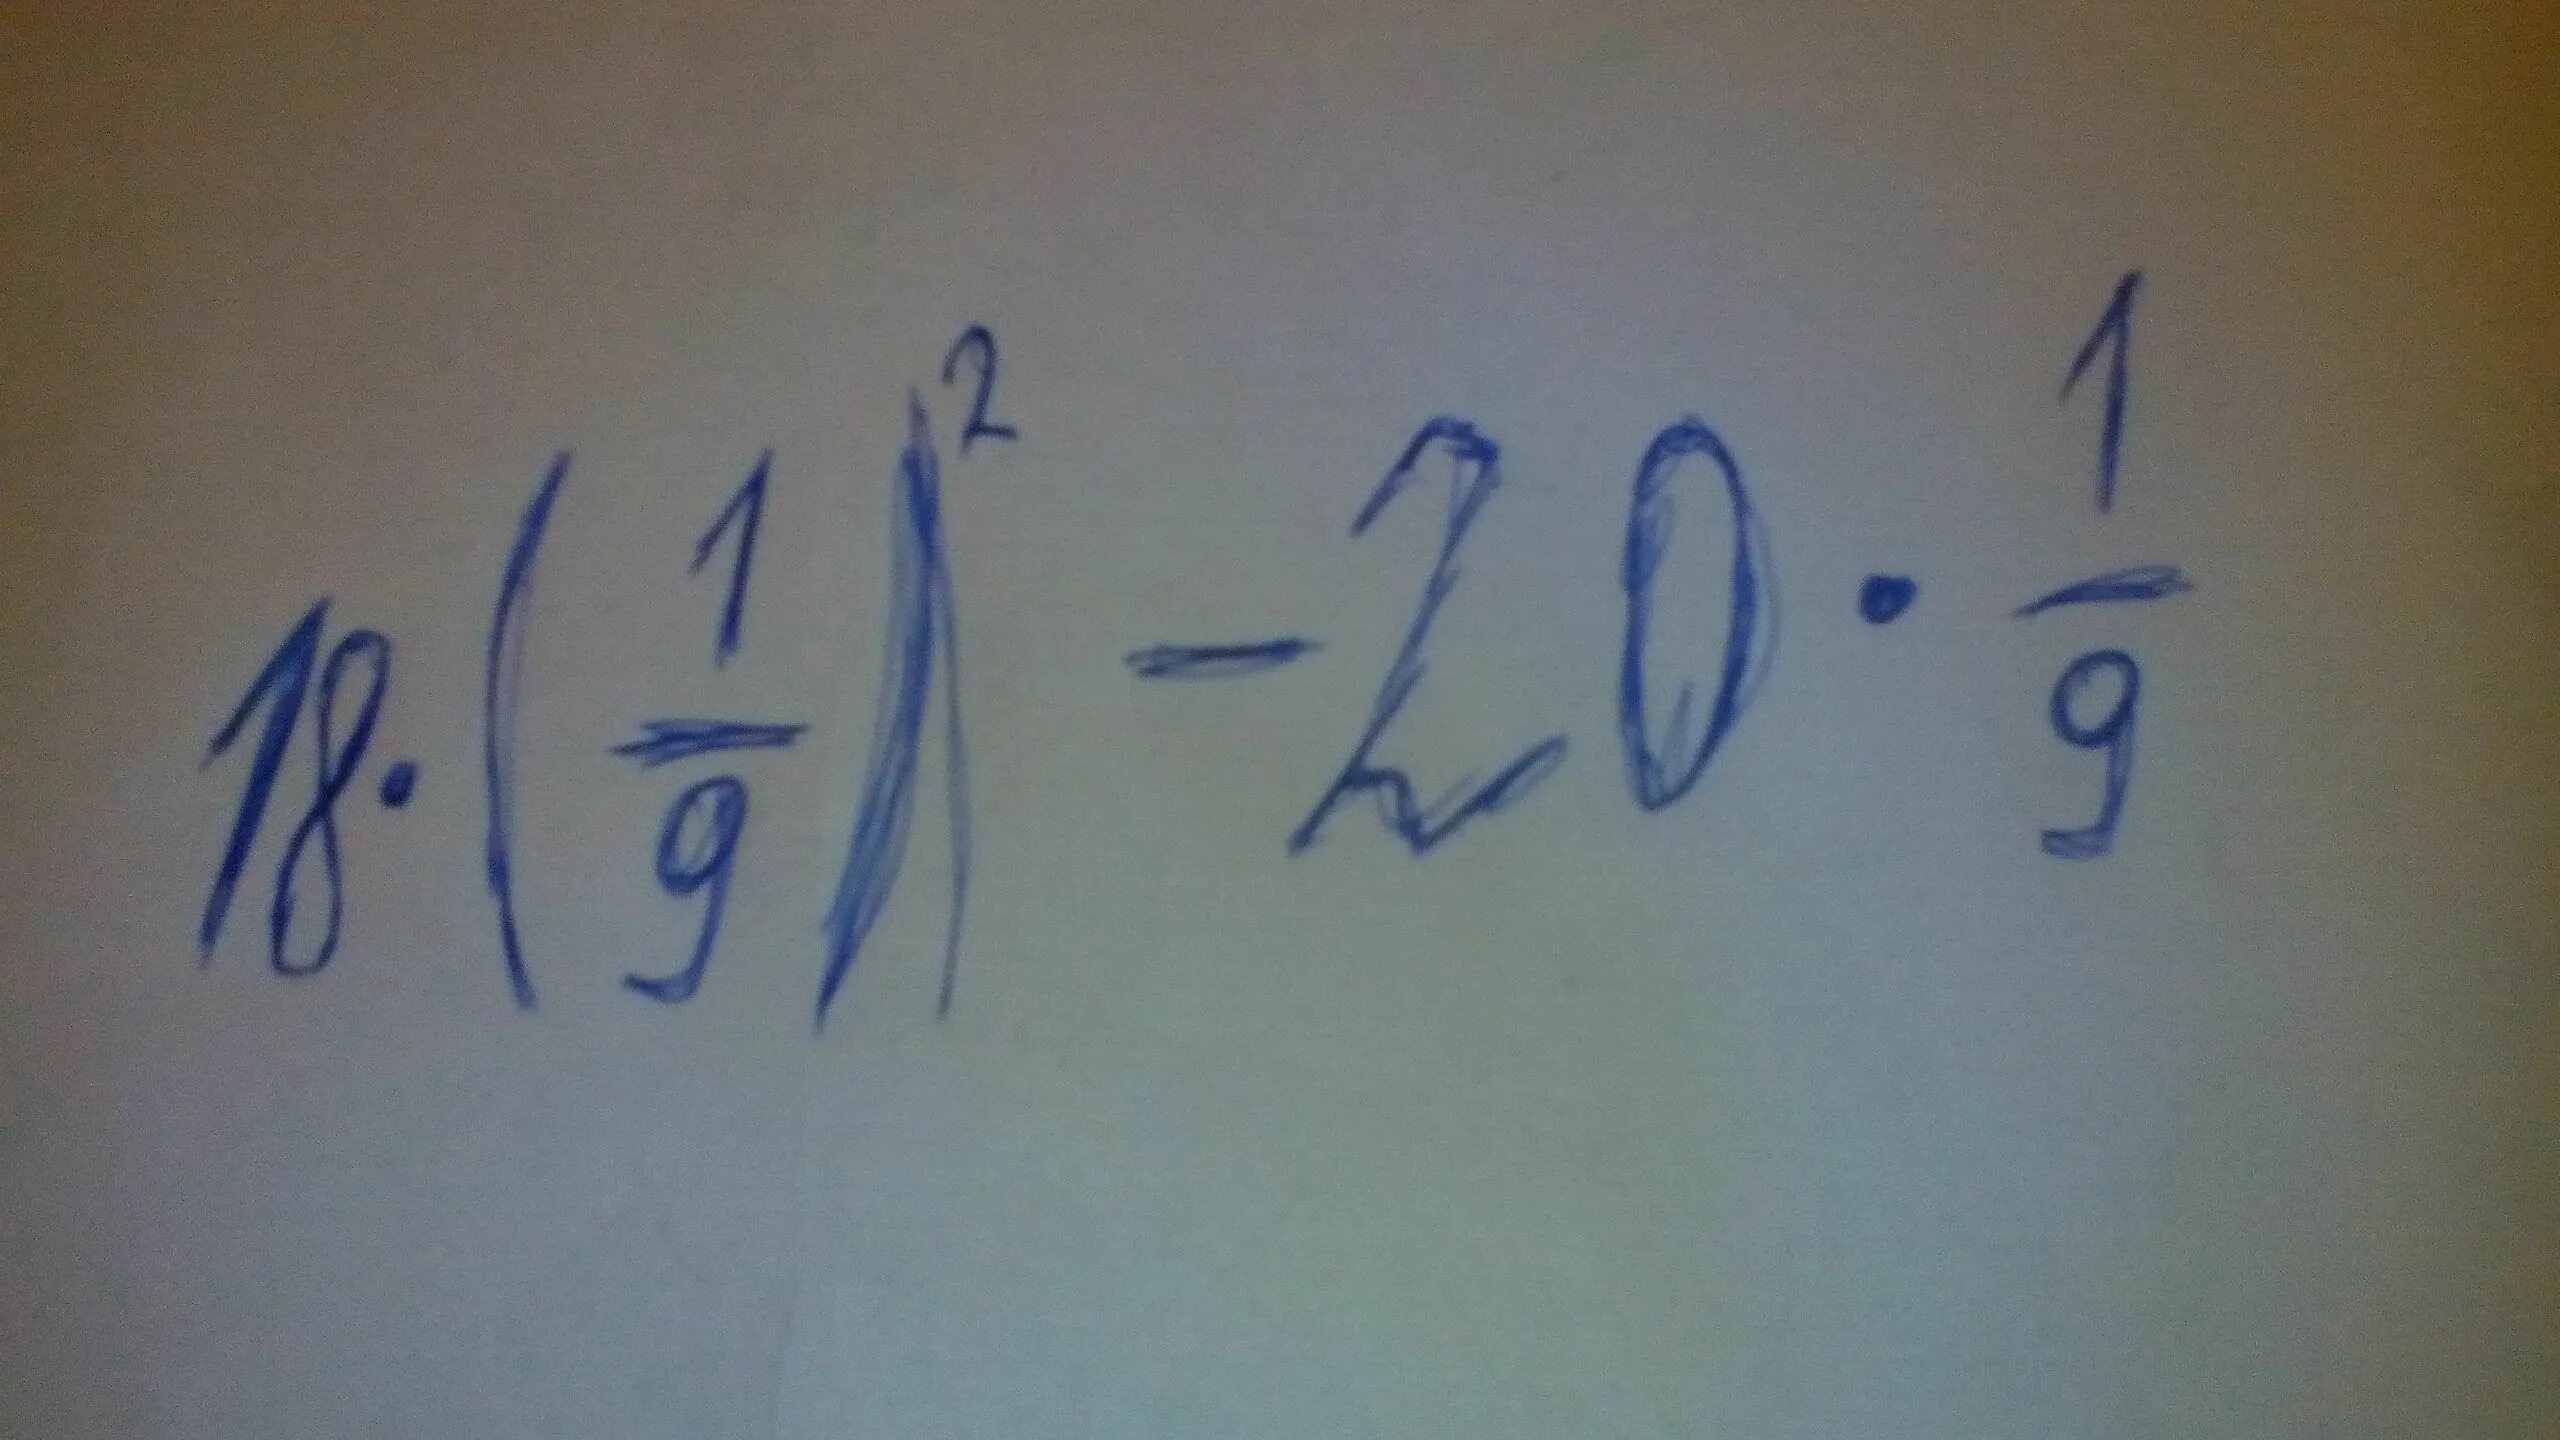 Двадцать умножить на девять. 18 1 9 В квадрате -20 1/9. Степени 18 1/9 2-20 1/9. 18 1 9 Во второй степени -20 1/9. 9×(1/9)-19×1/9.